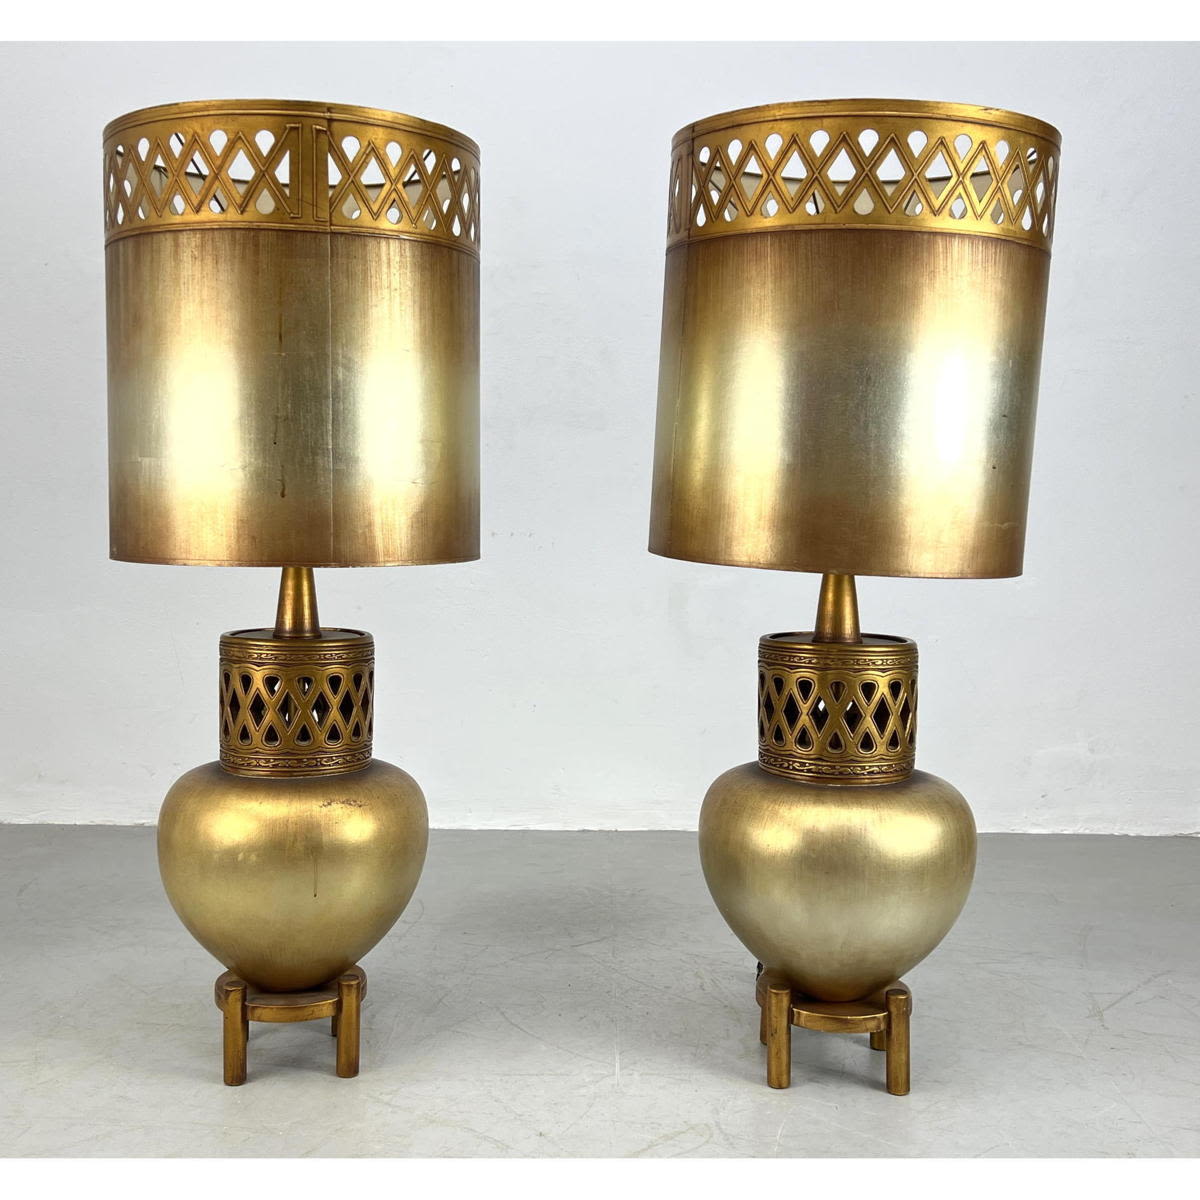 Pr Gilt Urn form Table Lamps. James